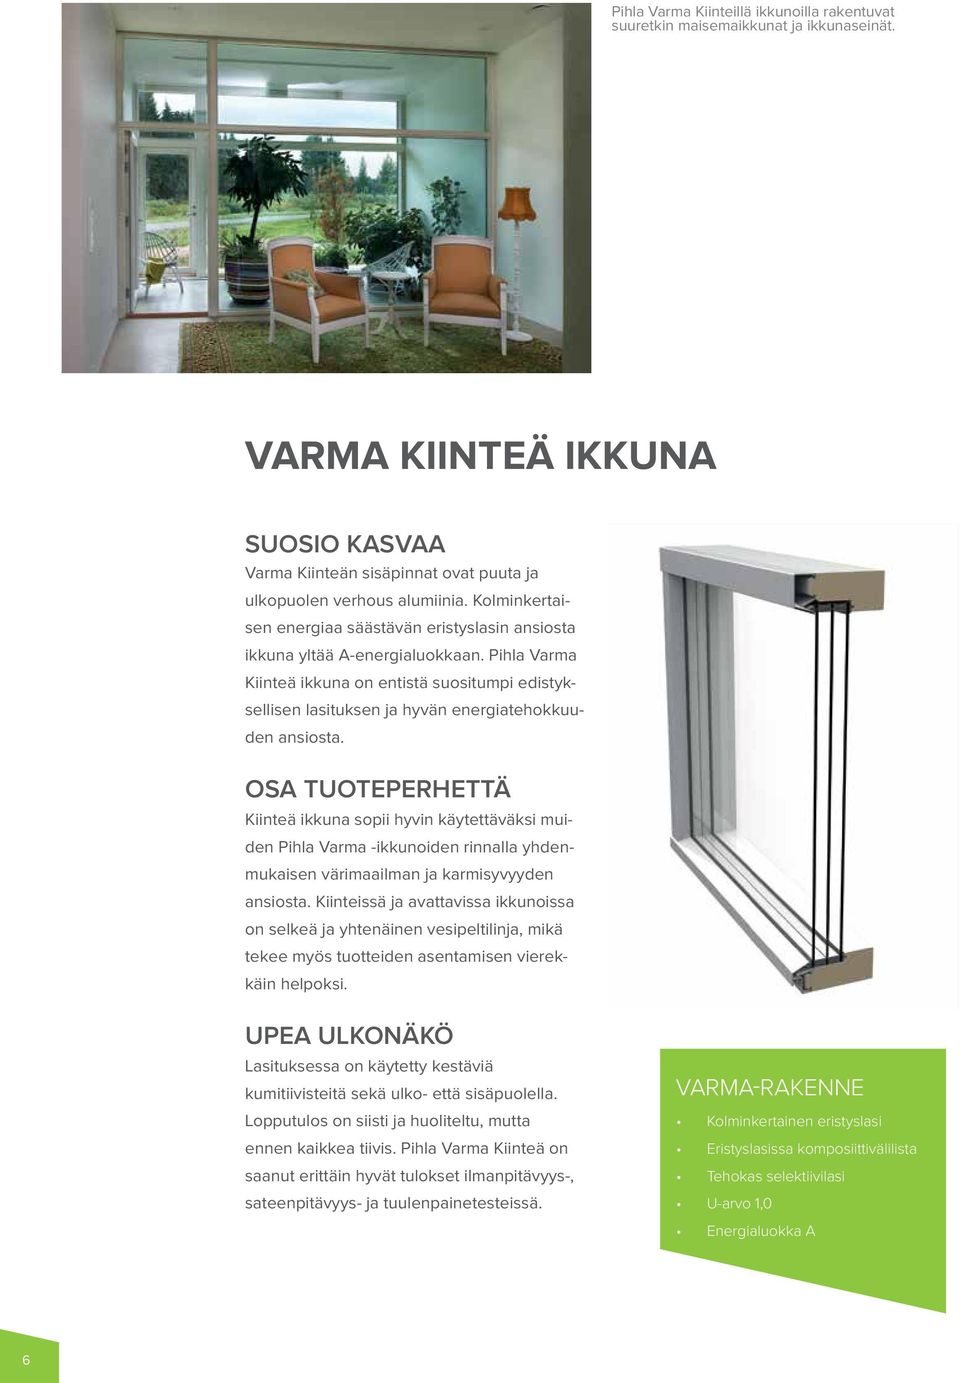 Pihla Varma Kiinteä ikkuna on entistä suositumpi edistyksellisen lasituksen ja hyvän energiatehokkuuden ansiosta.